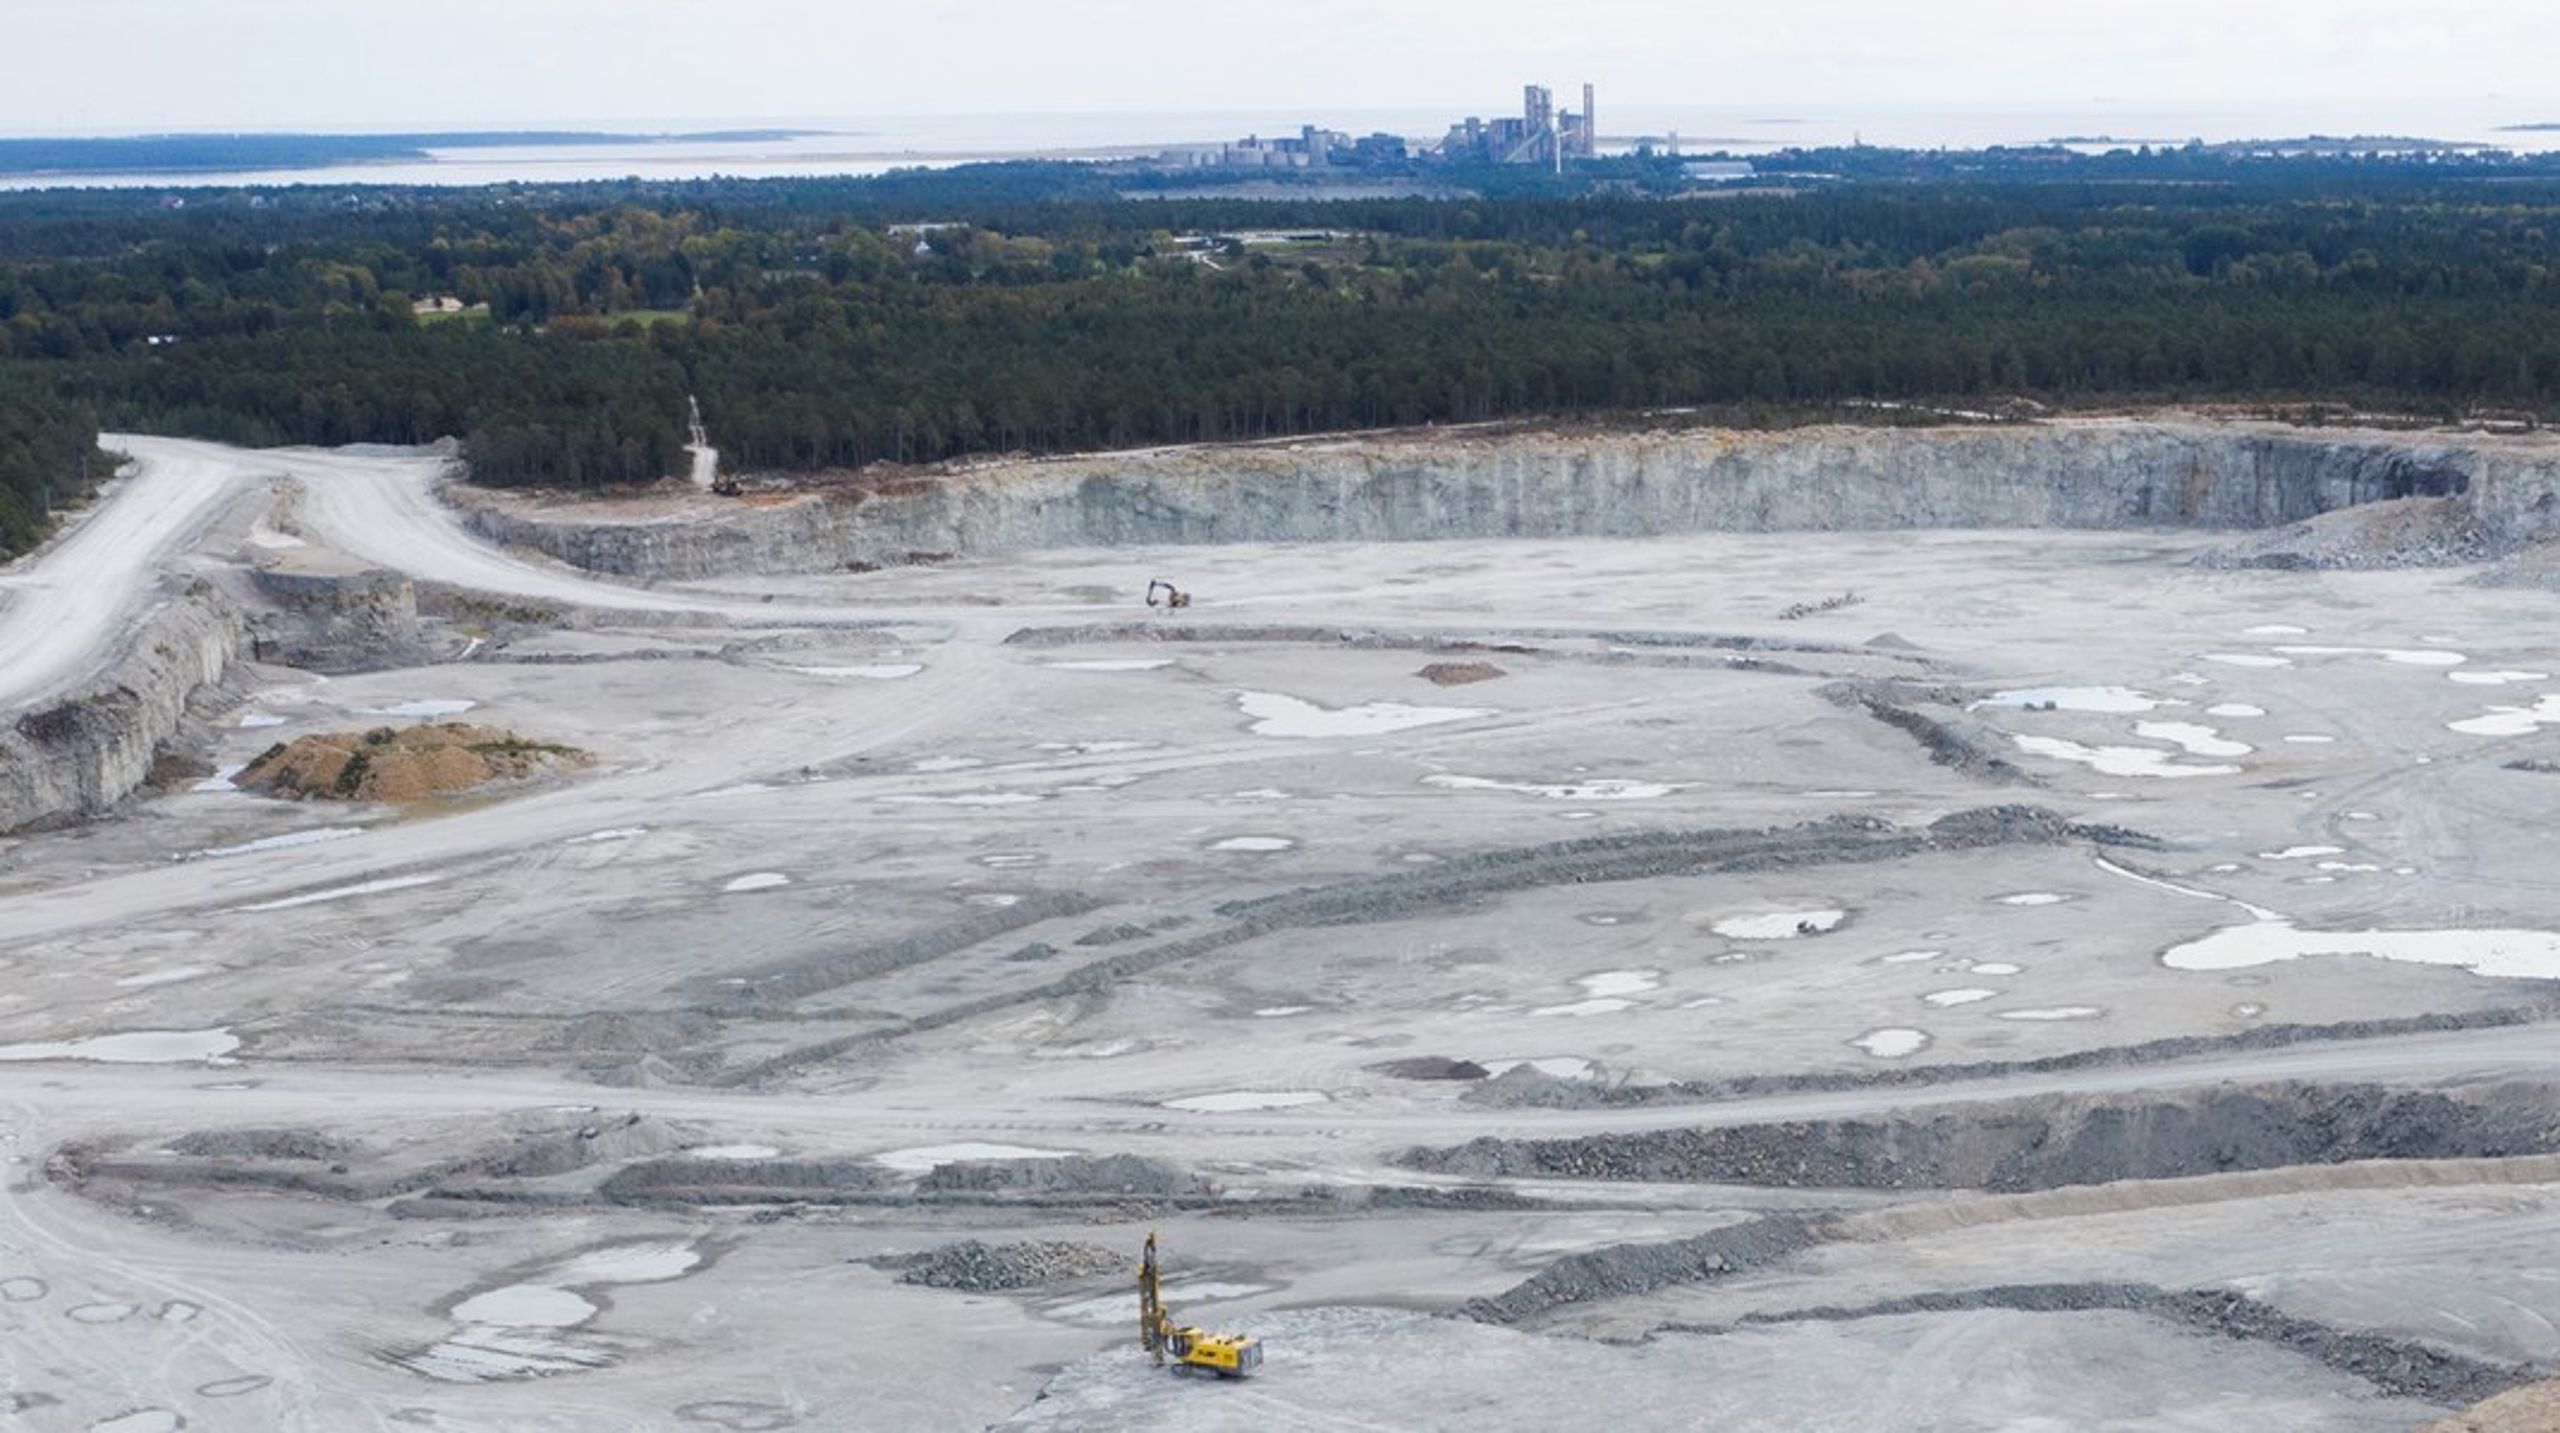 Världens första klimatneutrala cementfabrik planeras på Gotland.&nbsp;Industrins omställning går fortare än planerat men saknar rätt förutsättningar från politiken, skriver debattörerna.